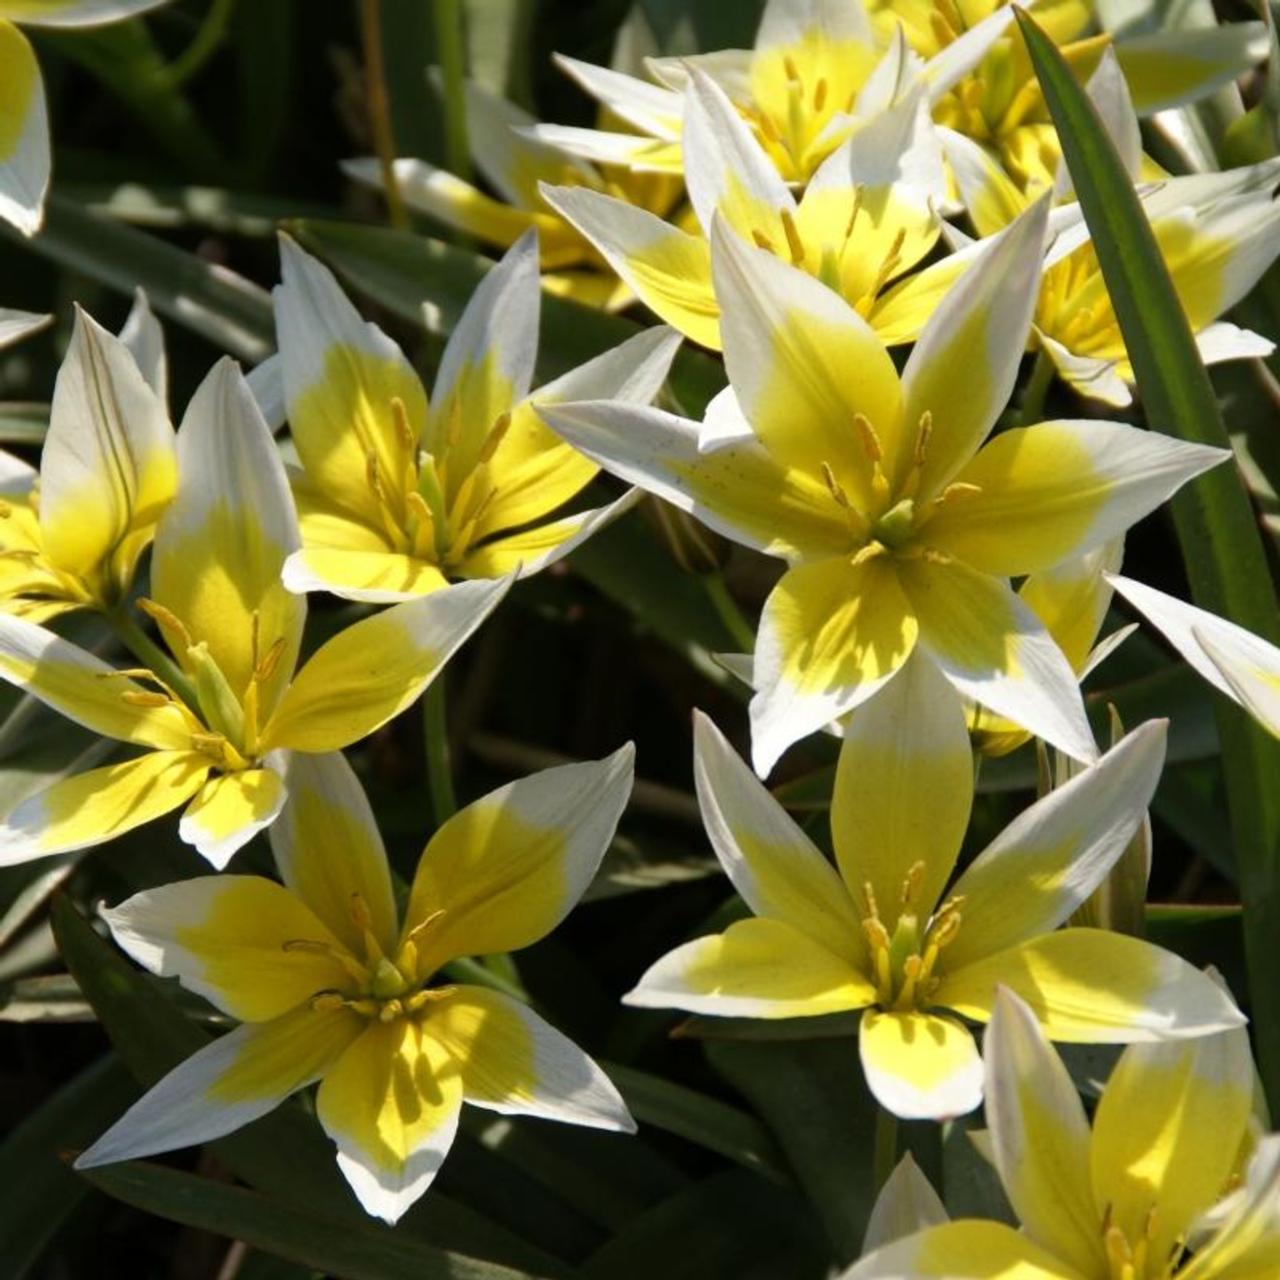 Tulipa tarda plant